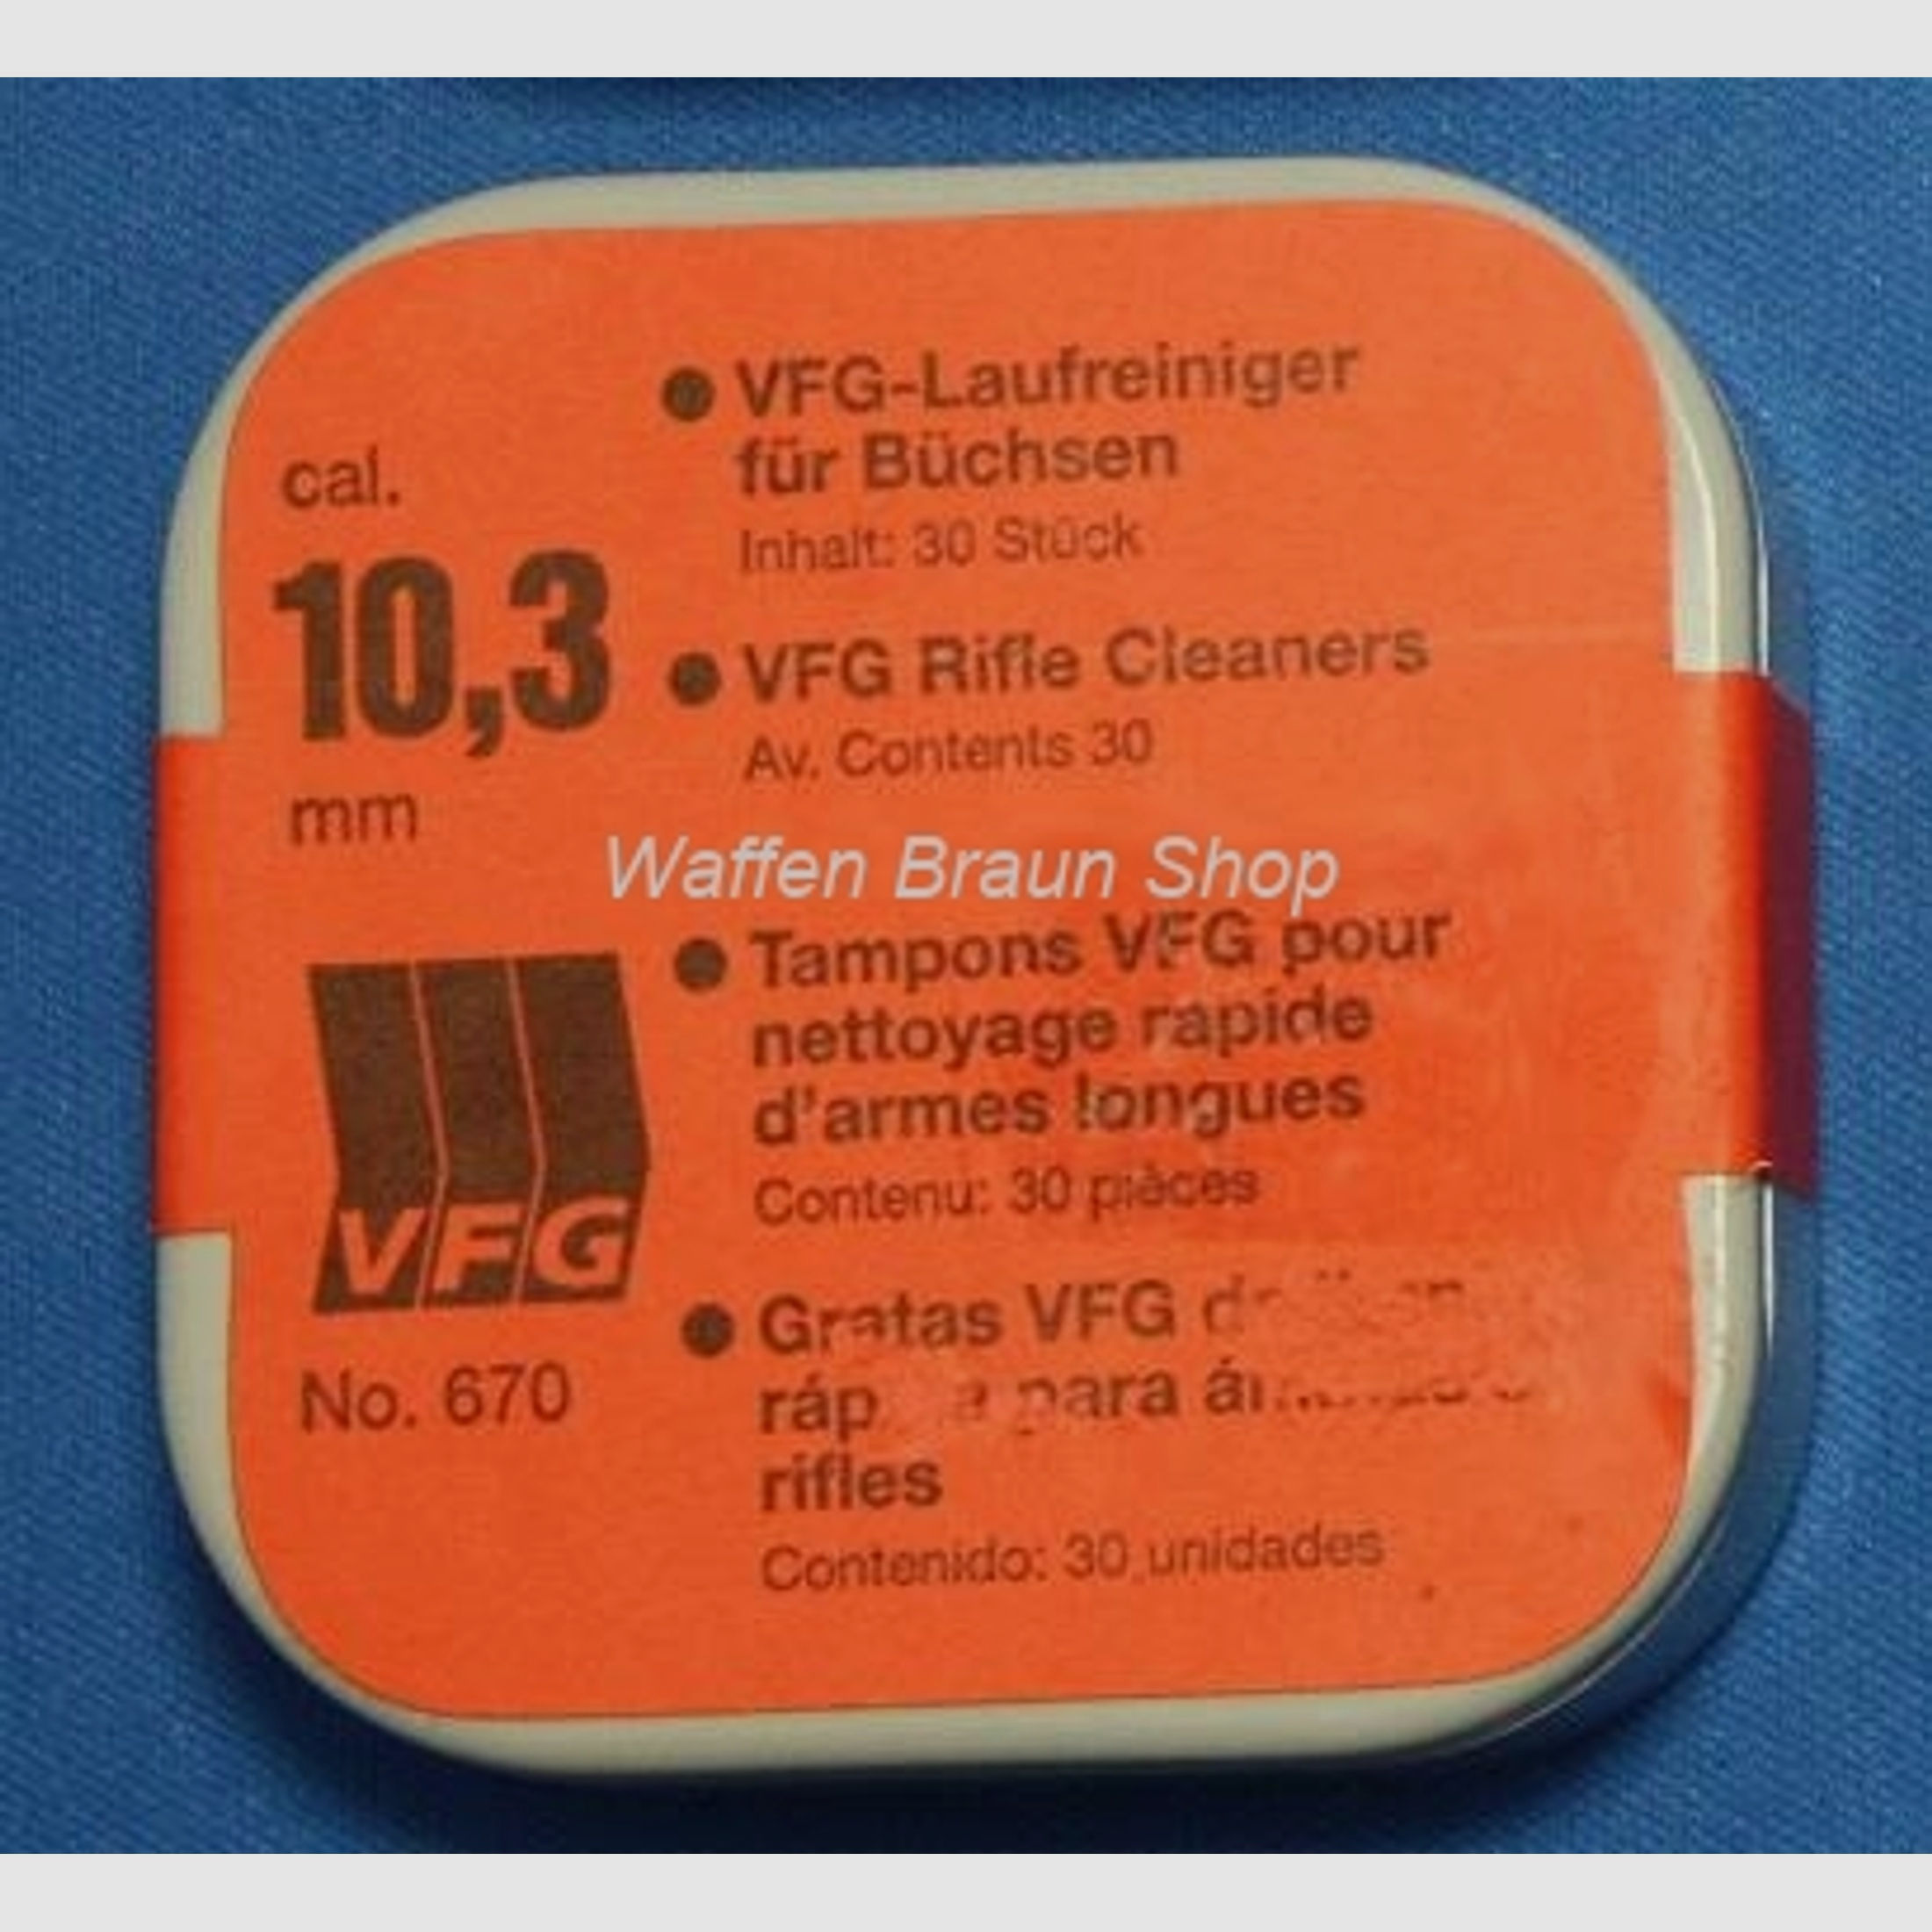 VFG-Laufreiniger für Büchsen, No. 670, 10,3 mm